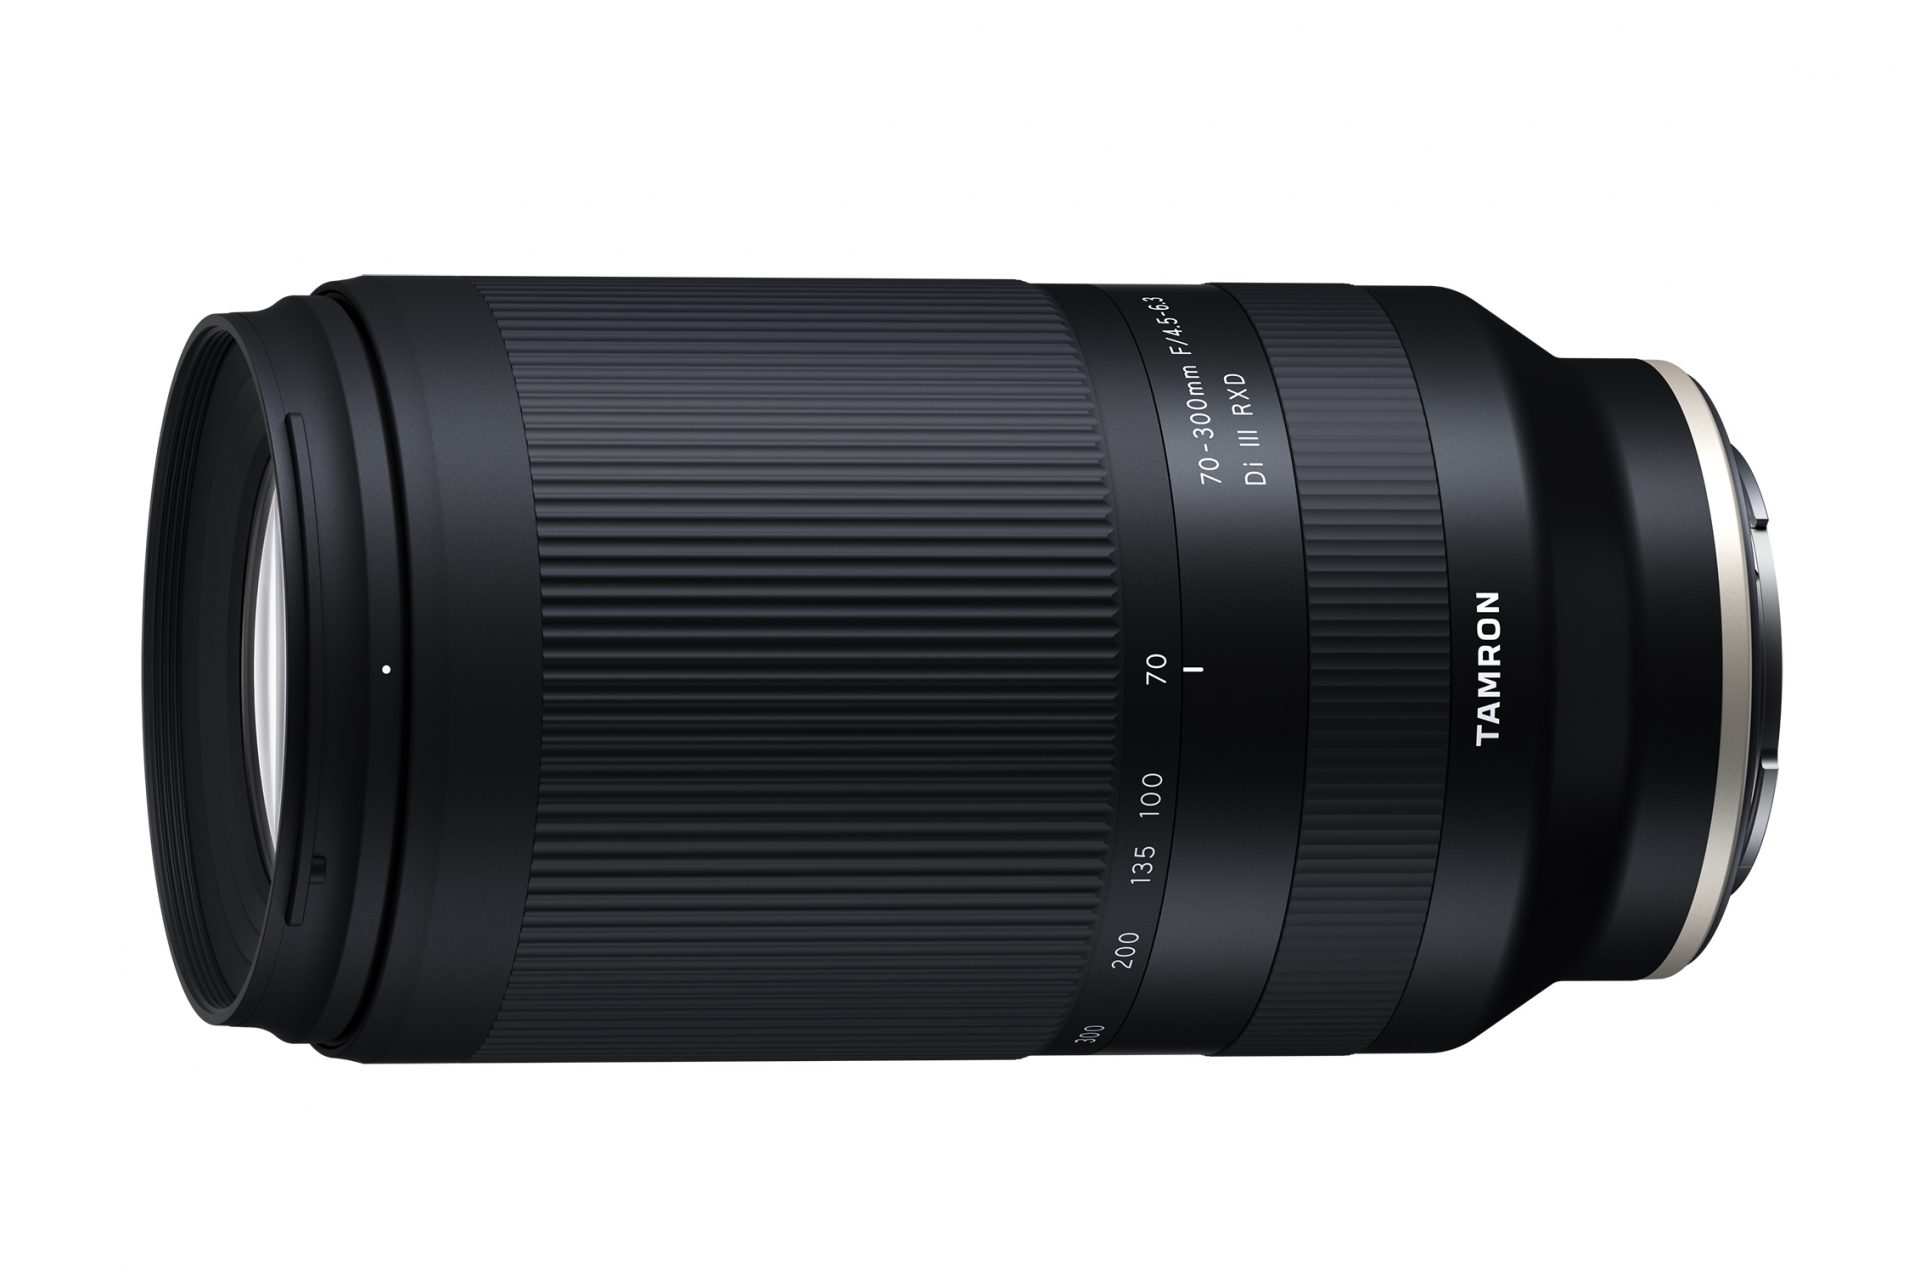 Ống kính Tamron 70-300mm F4.5-6.3 nhỏ gọn cho Sony ngàm E ra mắt, giá chỉ 549 USD